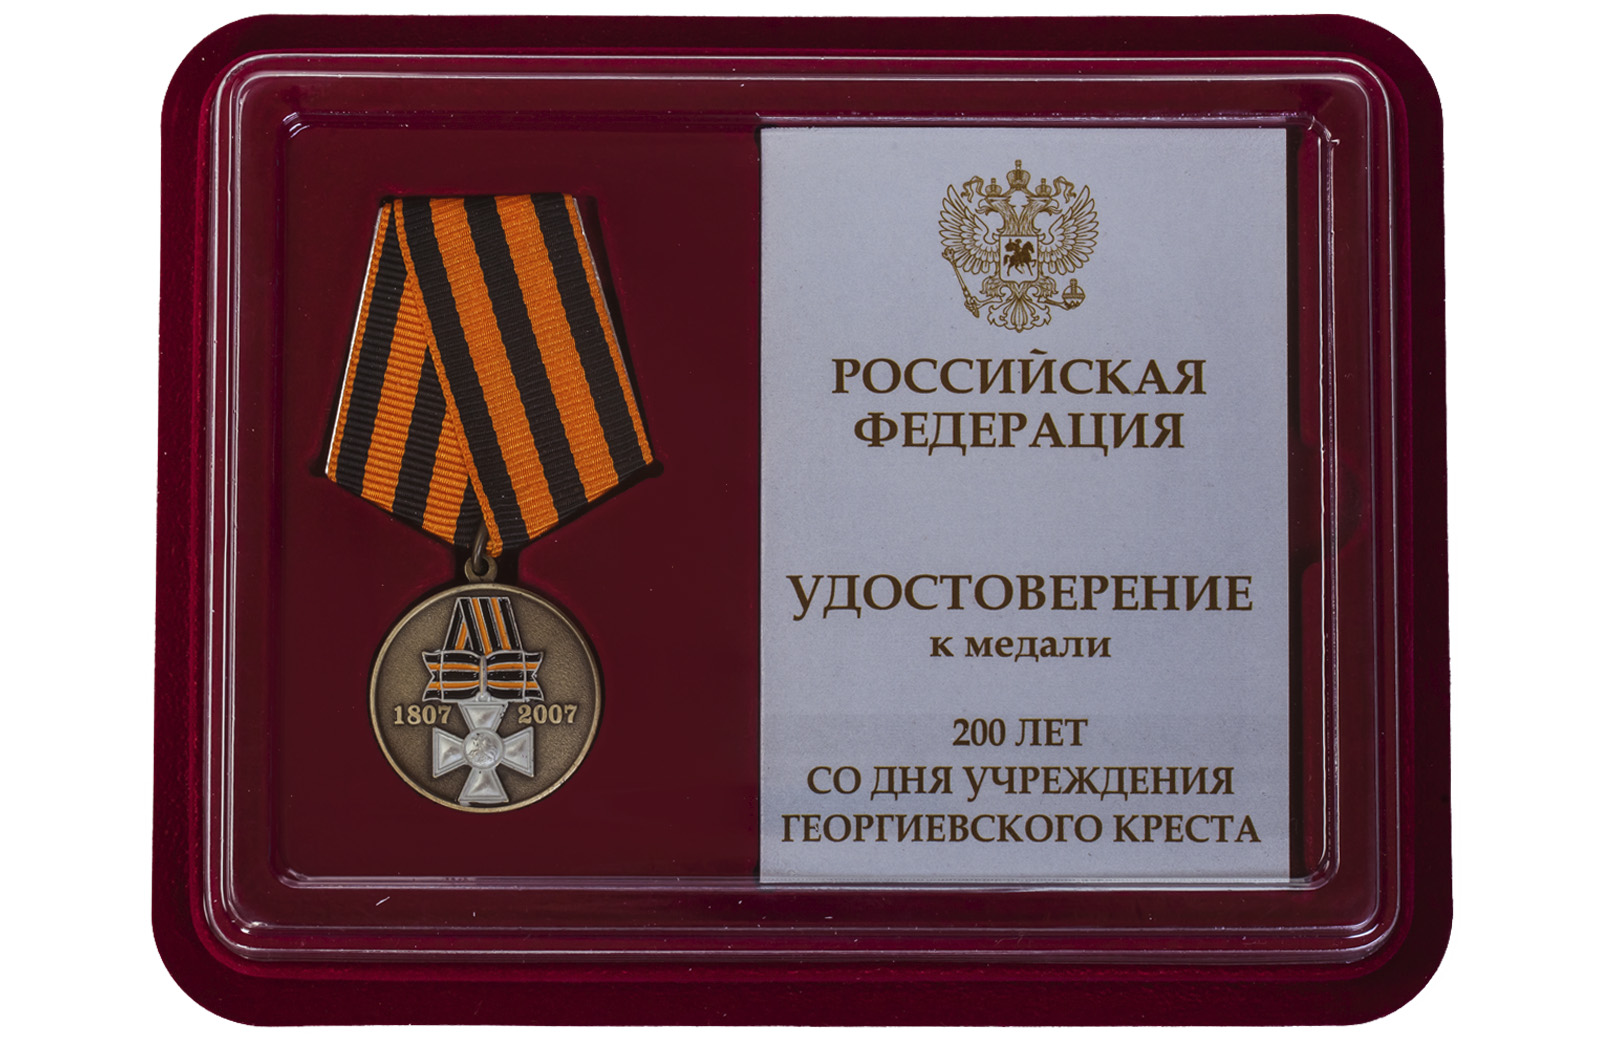 Купить юбилейная медаль 200 лет Георгиевскому кресту выгодно онлайн